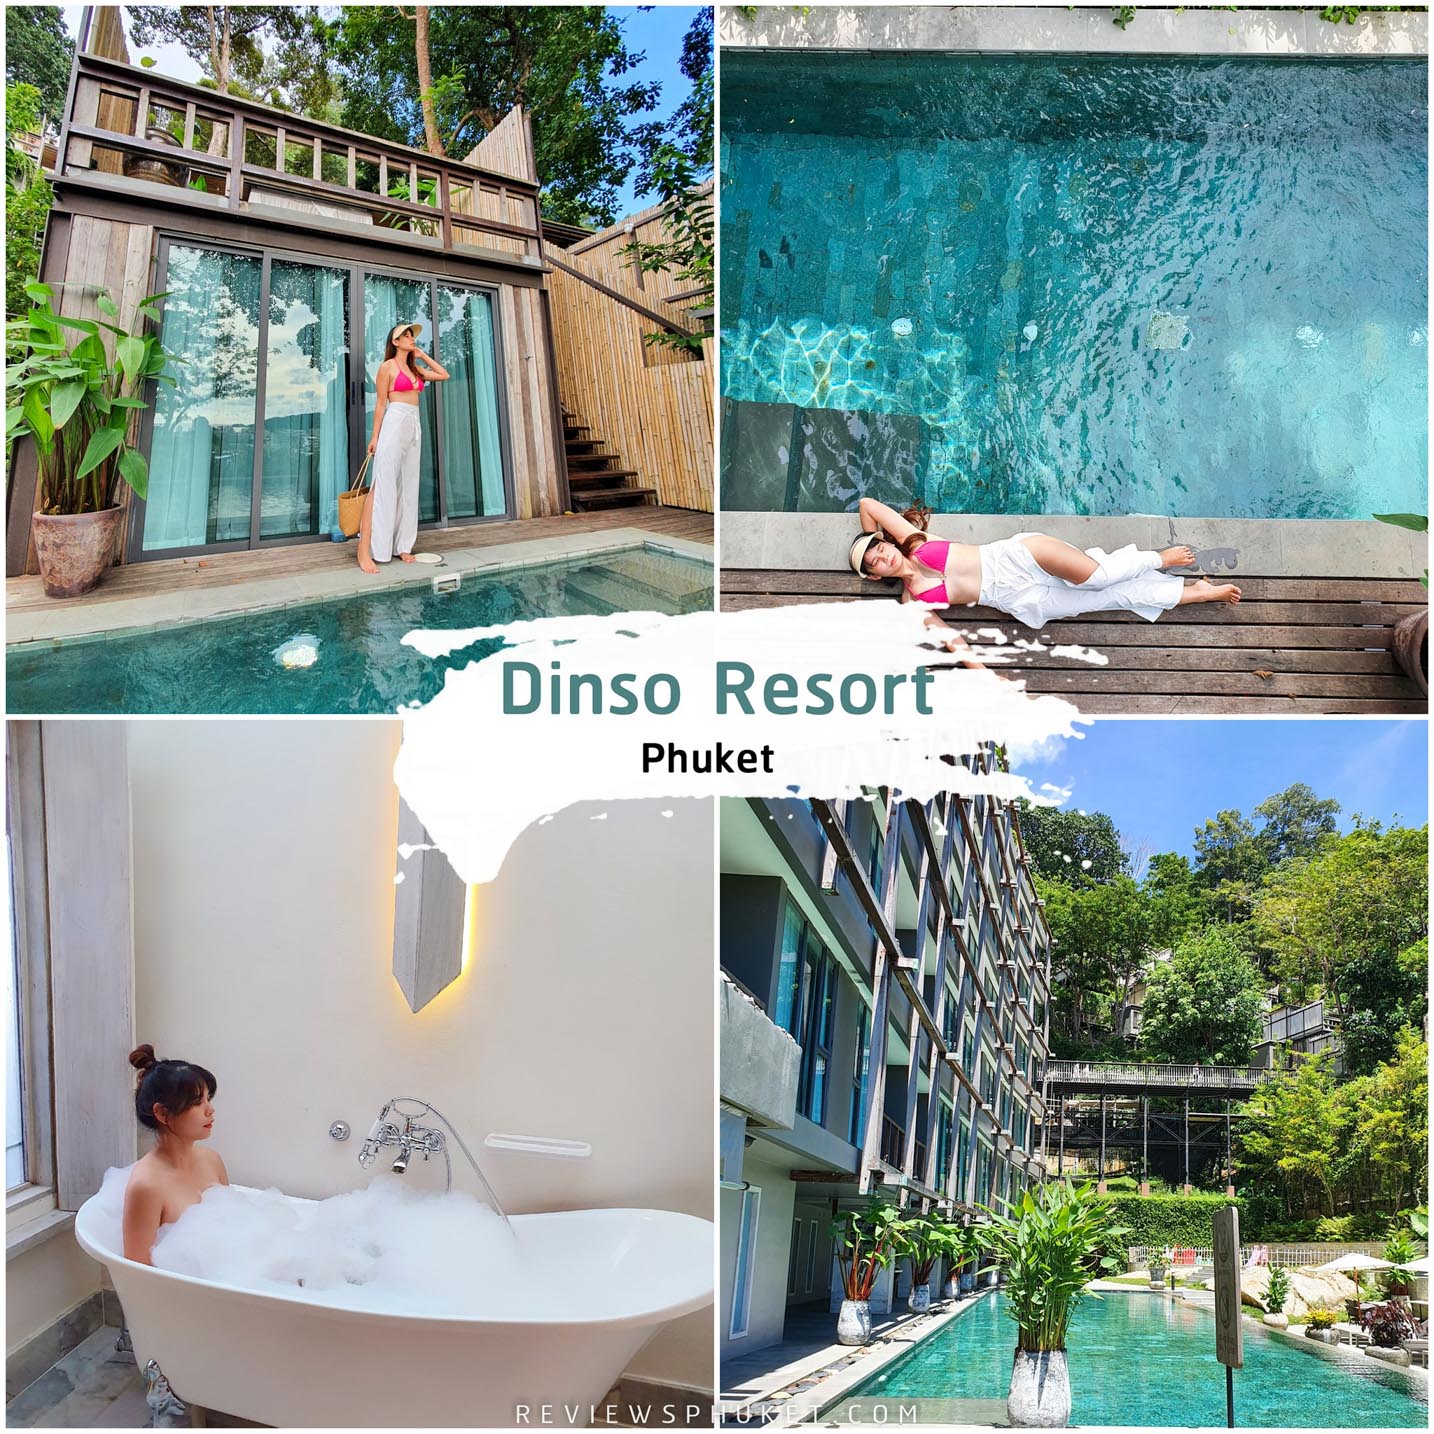 Dinso Resort Pool Villa  ดินสอ รีสอร์ท ที่พักภูเก็ตเด็ดๆ เปิดใหม่ใจกลางป่าตอง